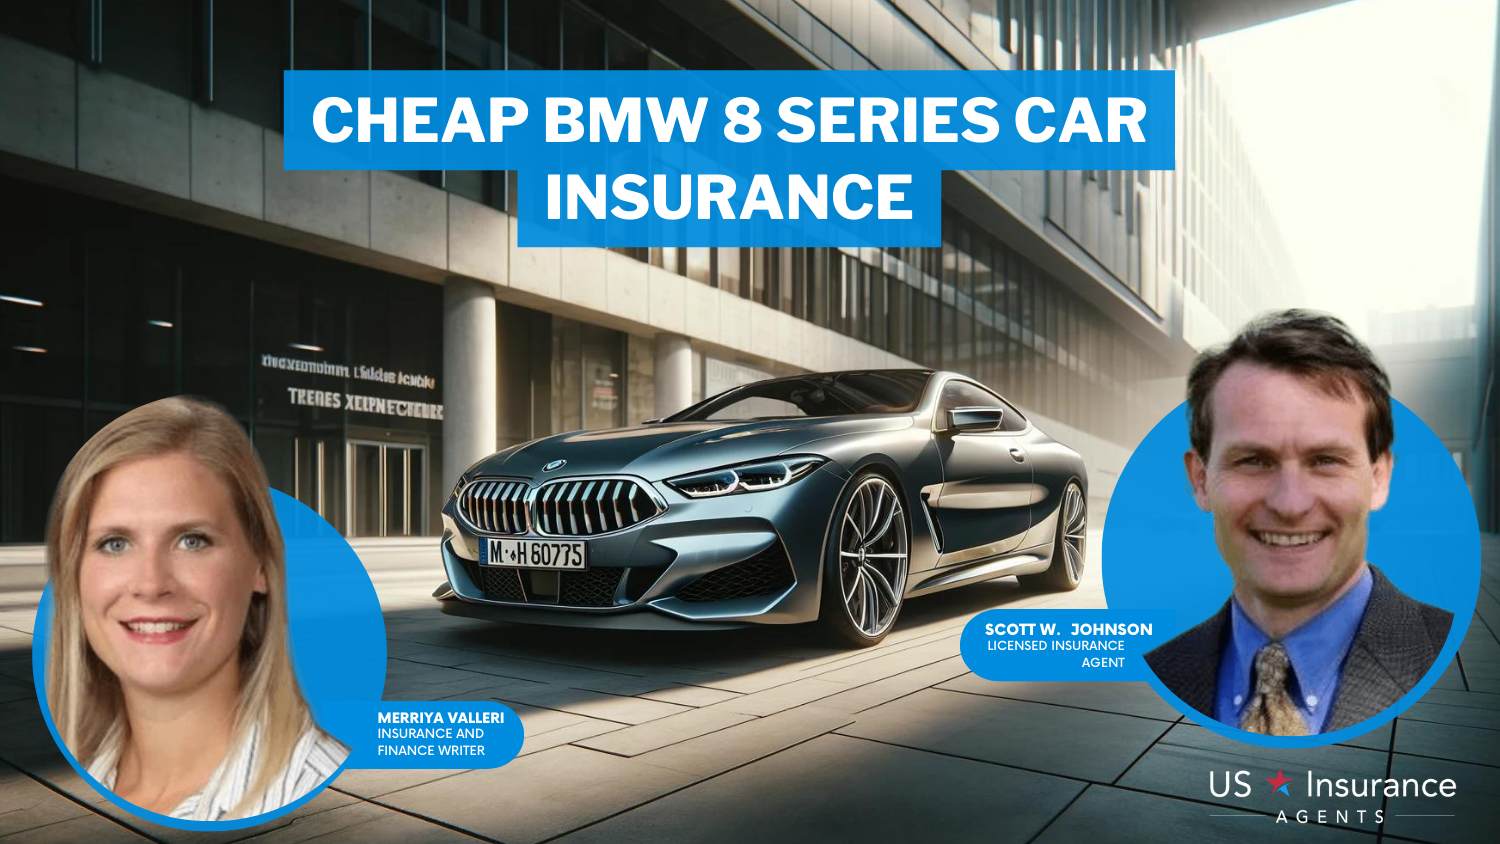 Progressive, State Farm, Liberty Mutual: Cheap BMW 8 Series Car Insurance